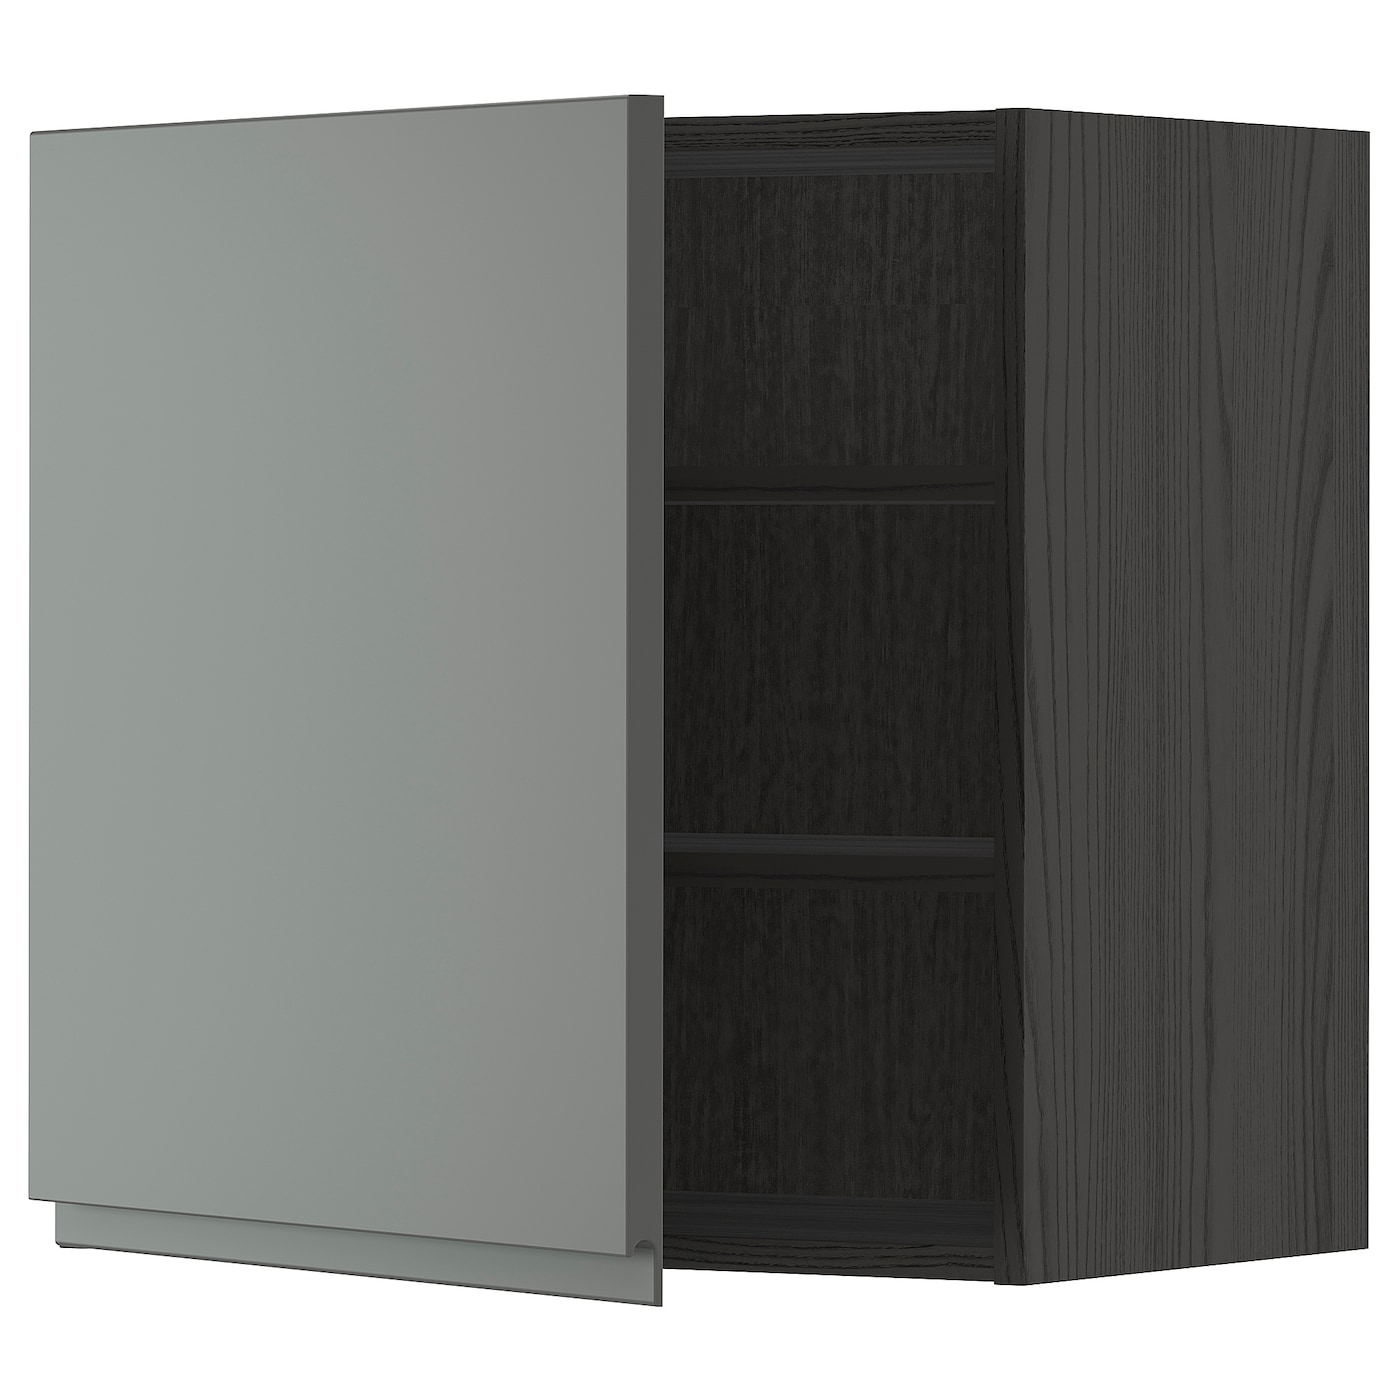 Навесной шкаф с полкой - METOD IKEA/ МЕТОД ИКЕА, 60х60 см, черный/темно-серый